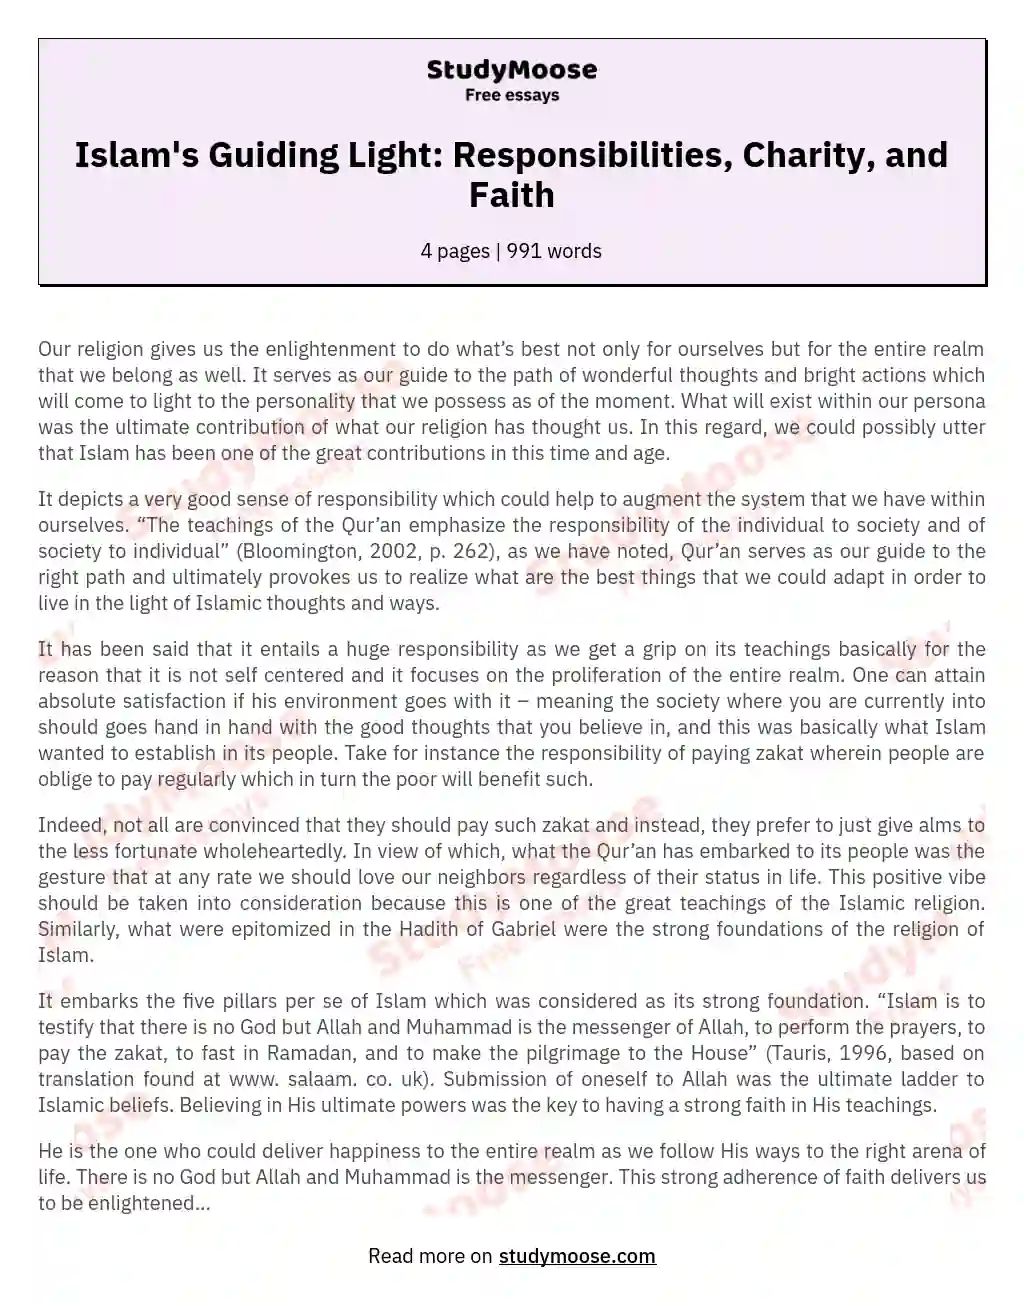 Islam's Guiding Light: Responsibilities, Charity, and Faith essay